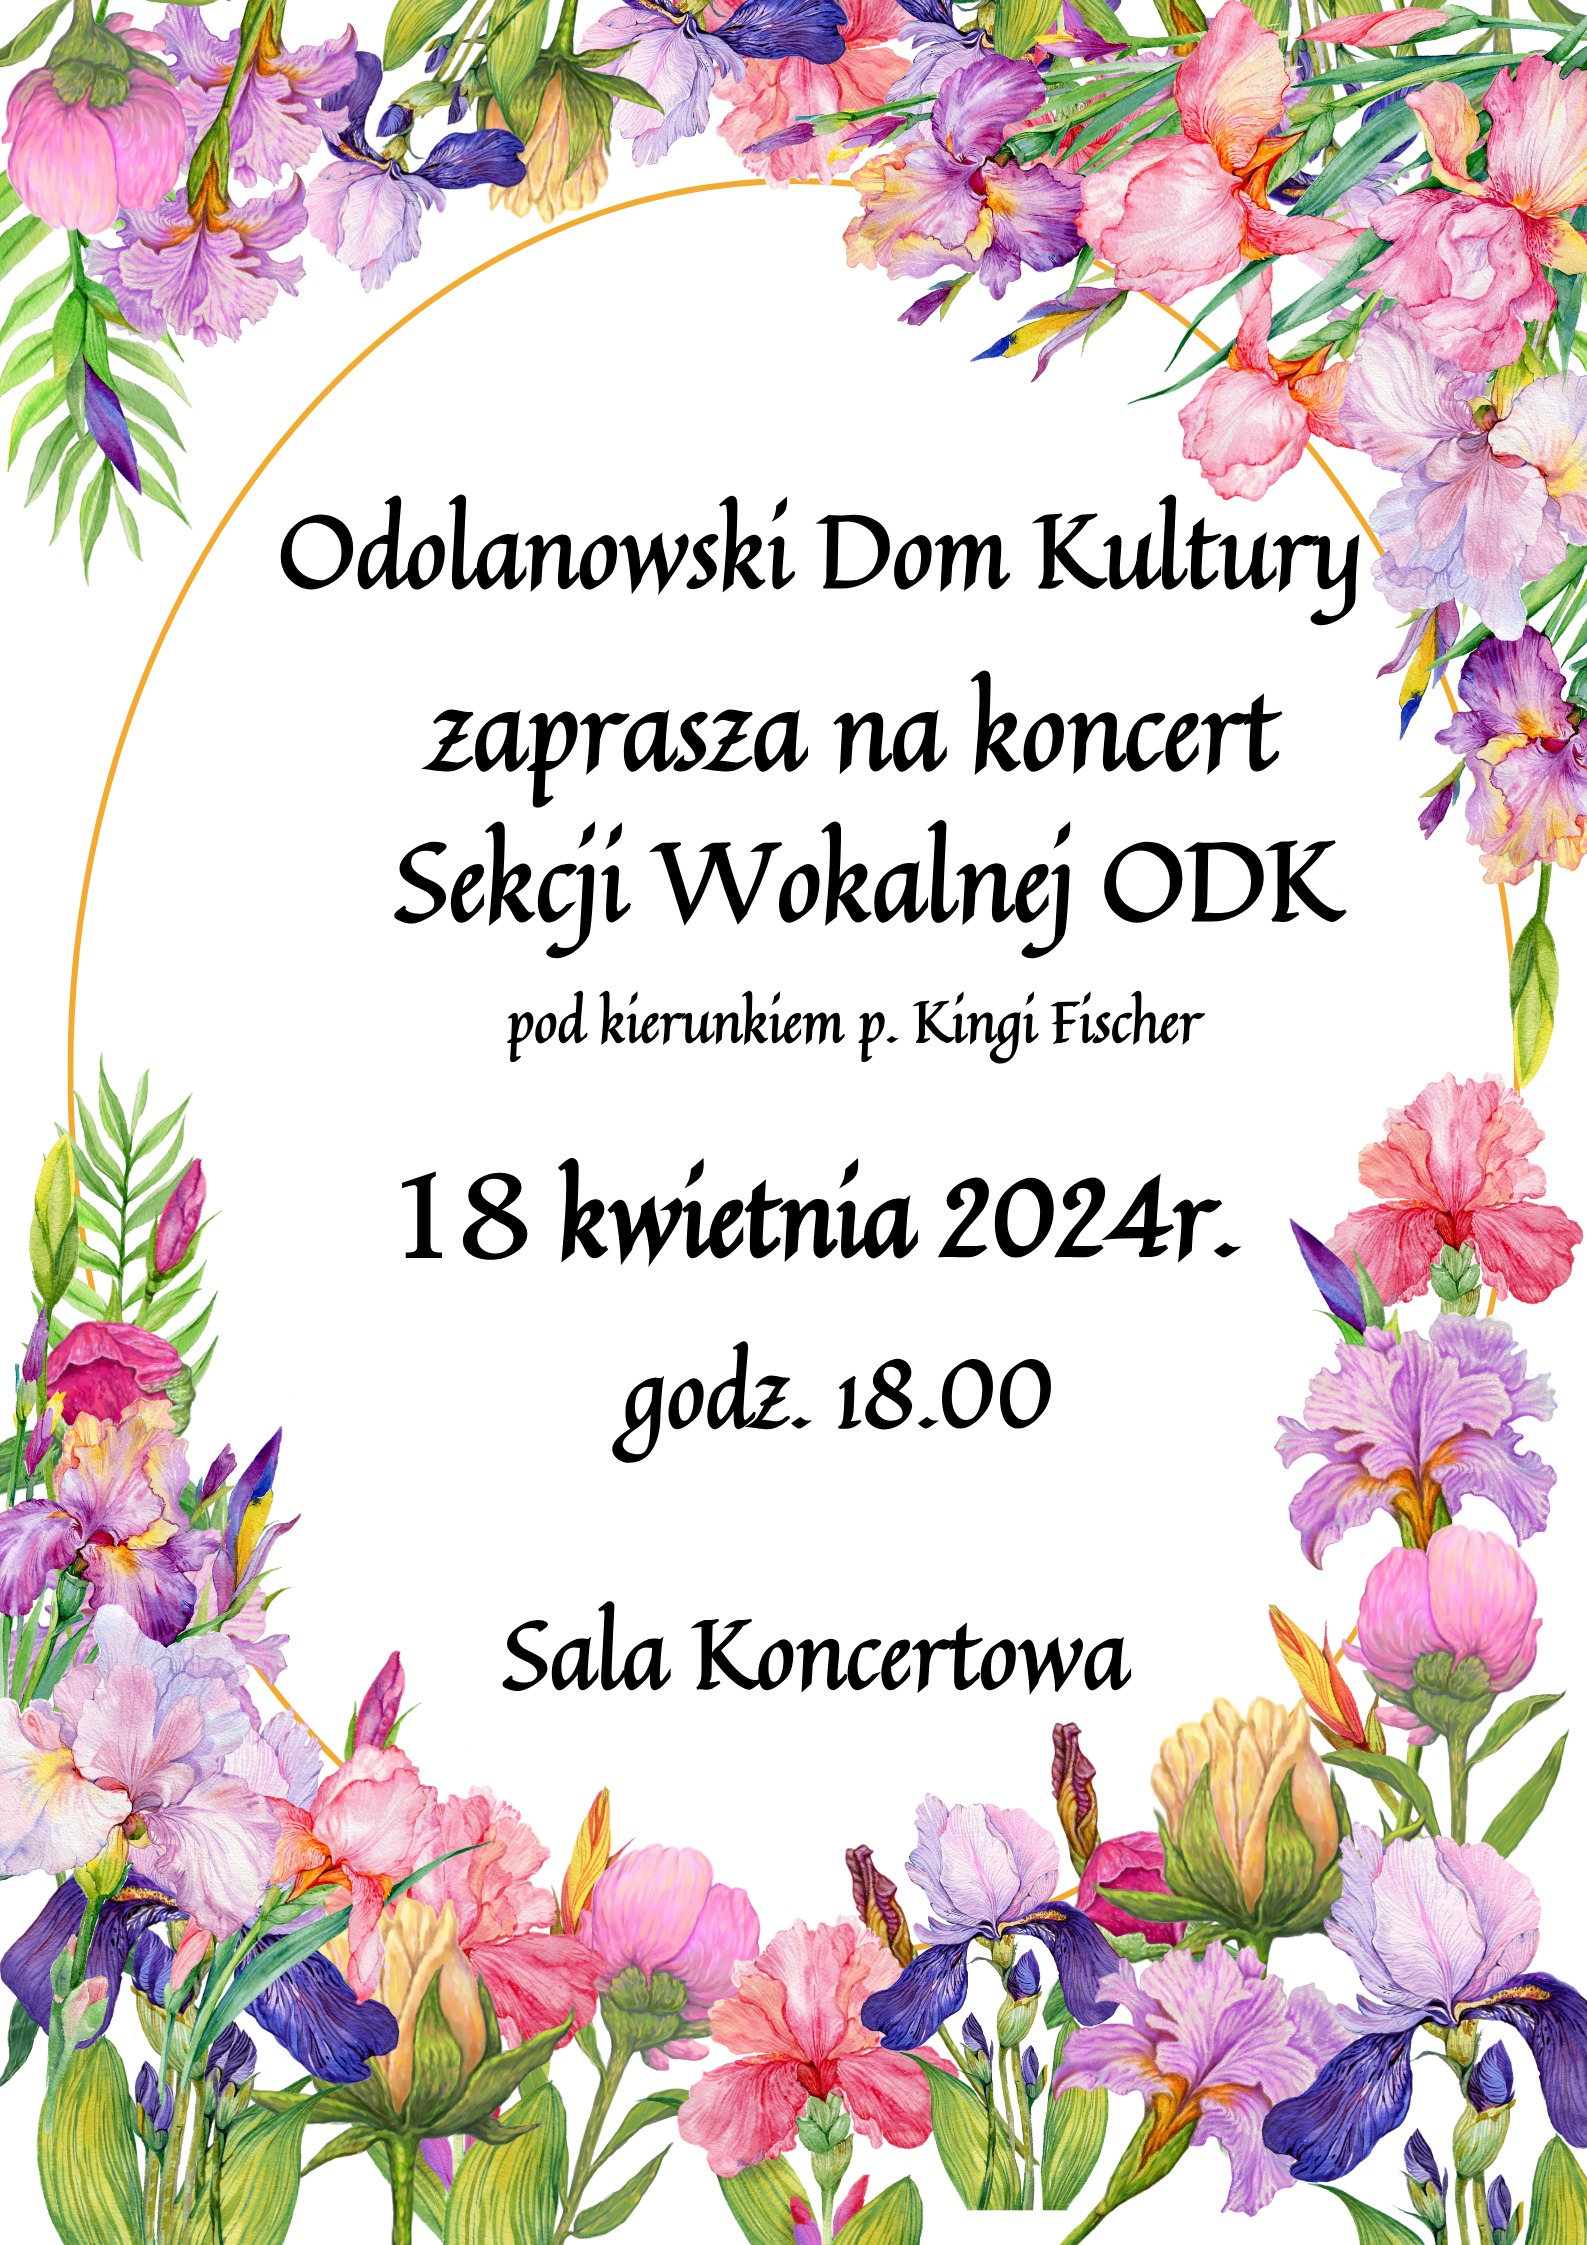 Koncert sekcji wokalnej ODK odbędzie się 18 kwietnia